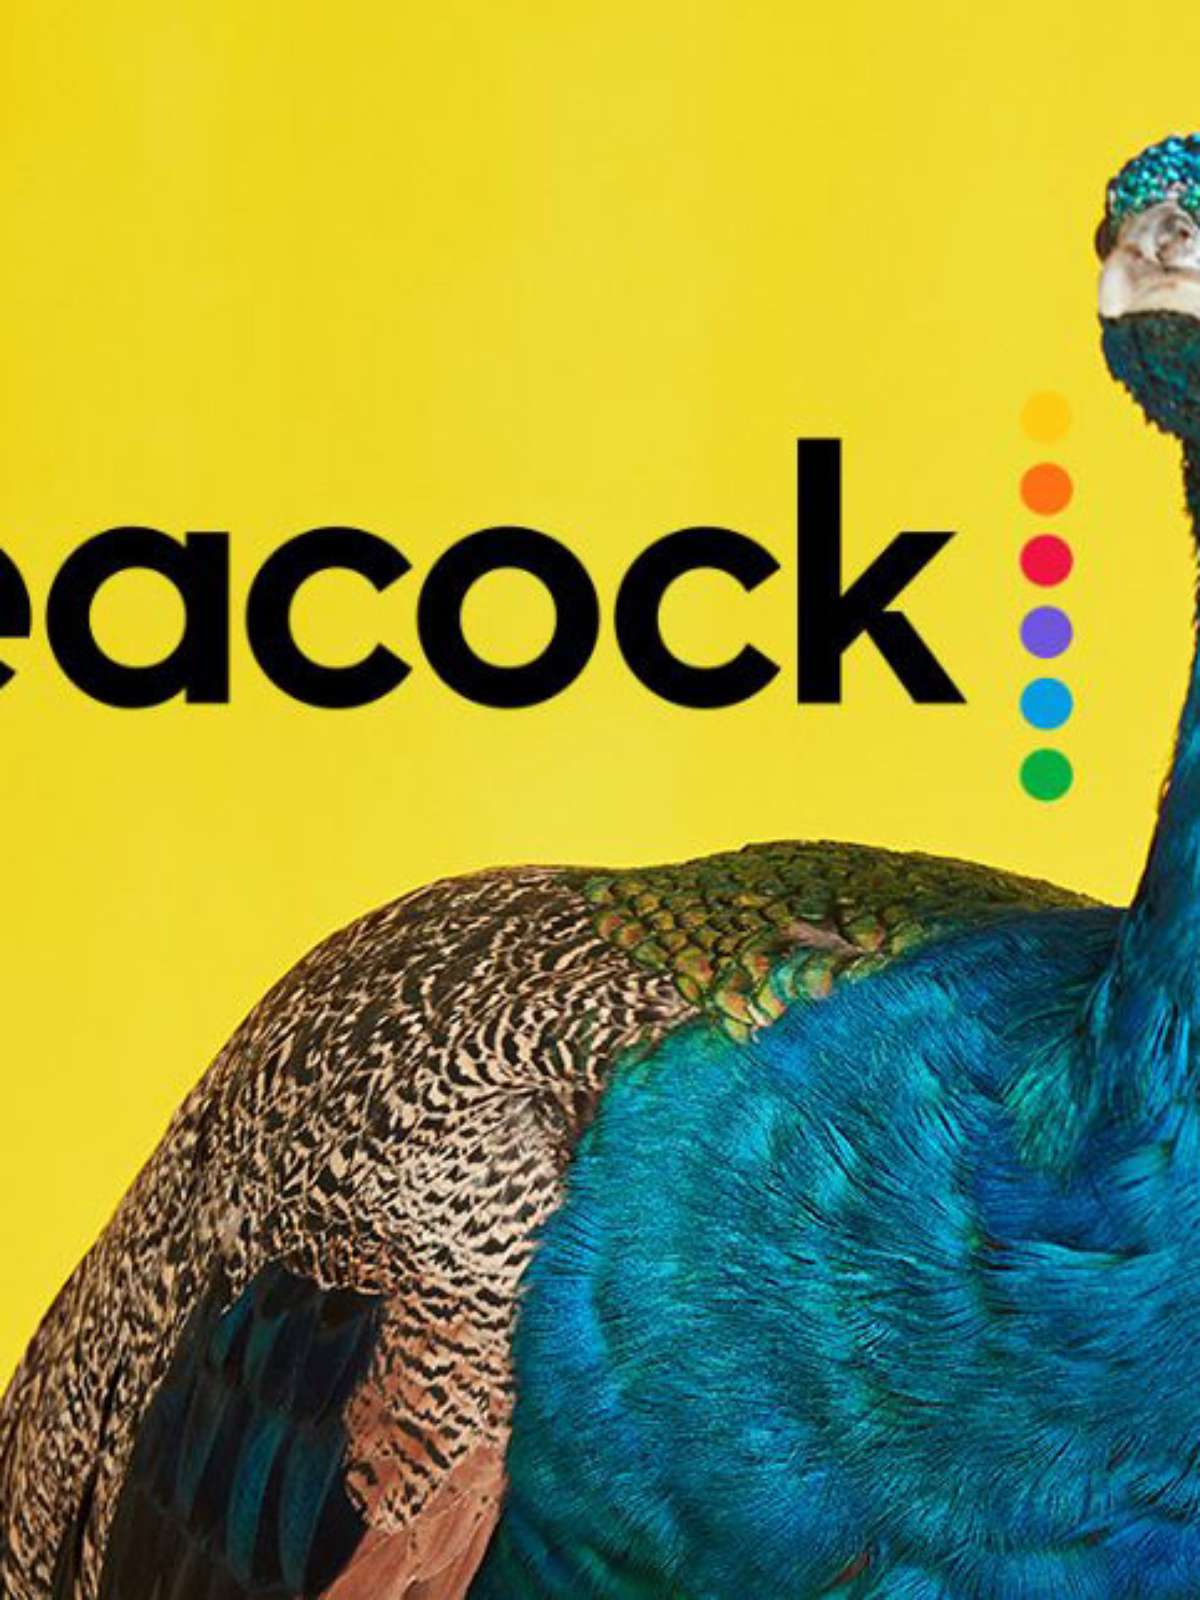 Plataforma Peacock revela planos de expansão internacional